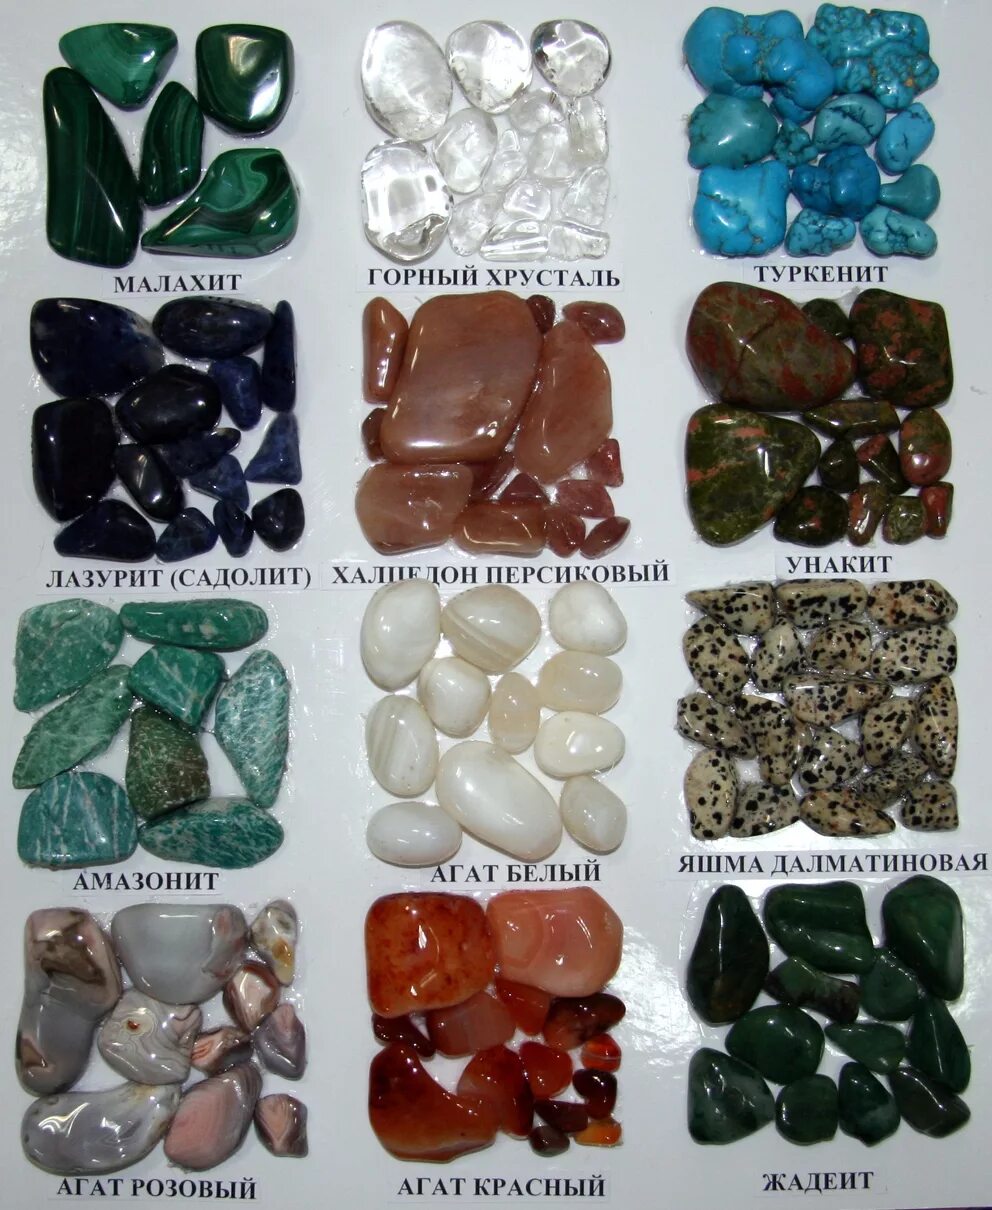 Название драгоценностей. Самоцветы минералы натуральные камни. Названия самоцветов полудрагоценные камни. Драгоценные , полудрагоценные камни Самоцветы. Поделочные камушки.